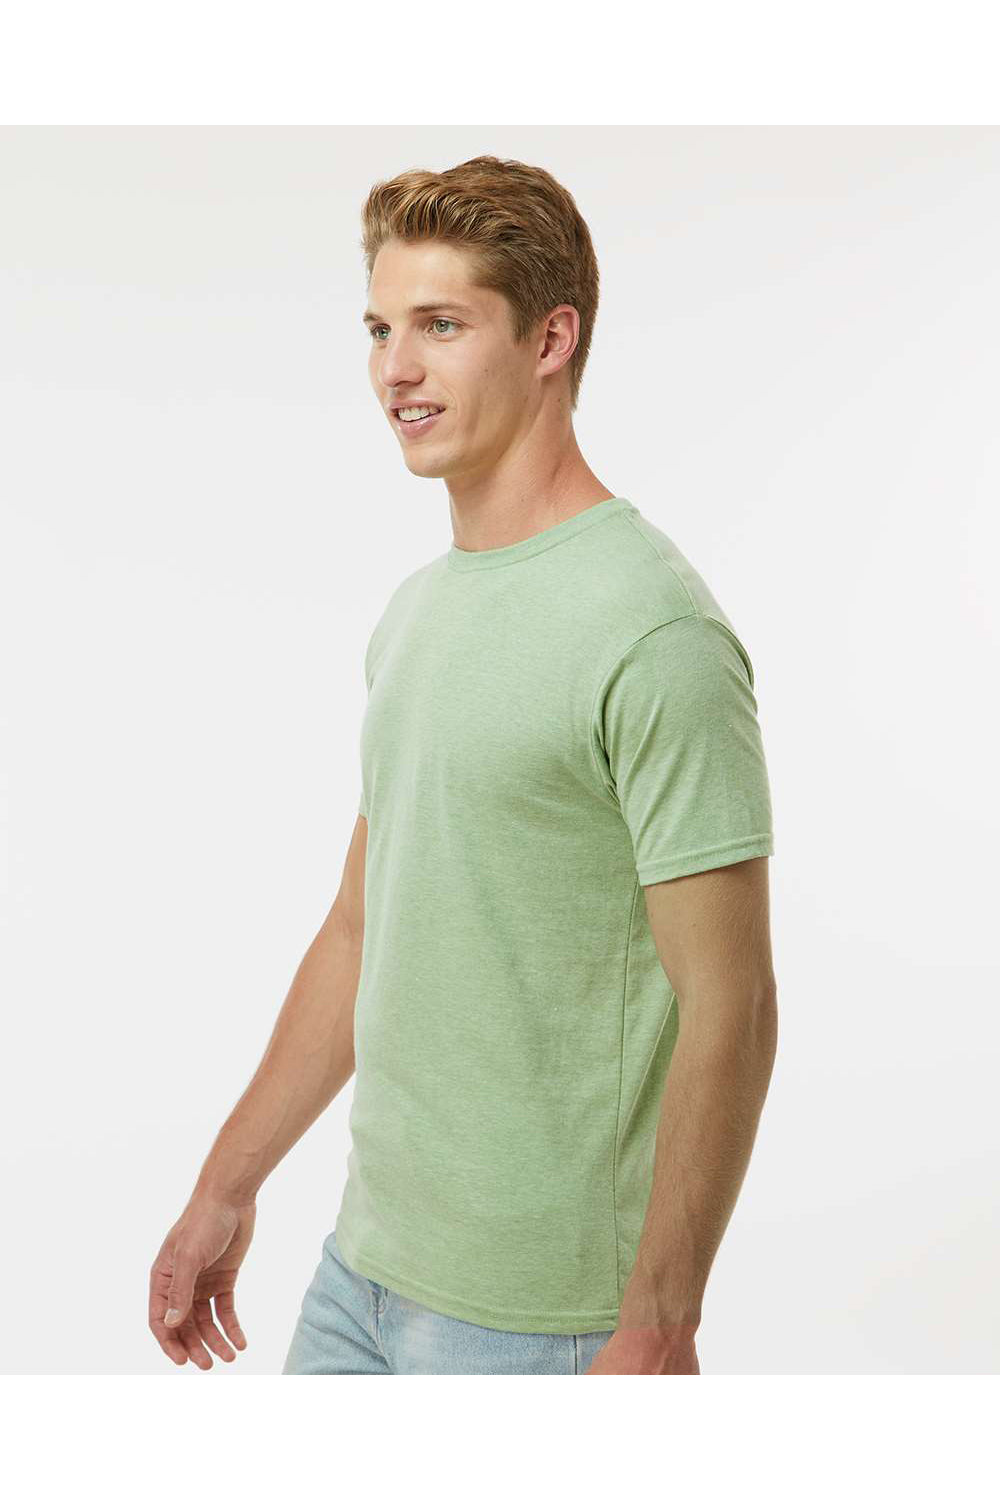 Kastlfel 2010 Mens RecycledSoft Short Sleve Crewneck T-Shirt Green Tea Model Side